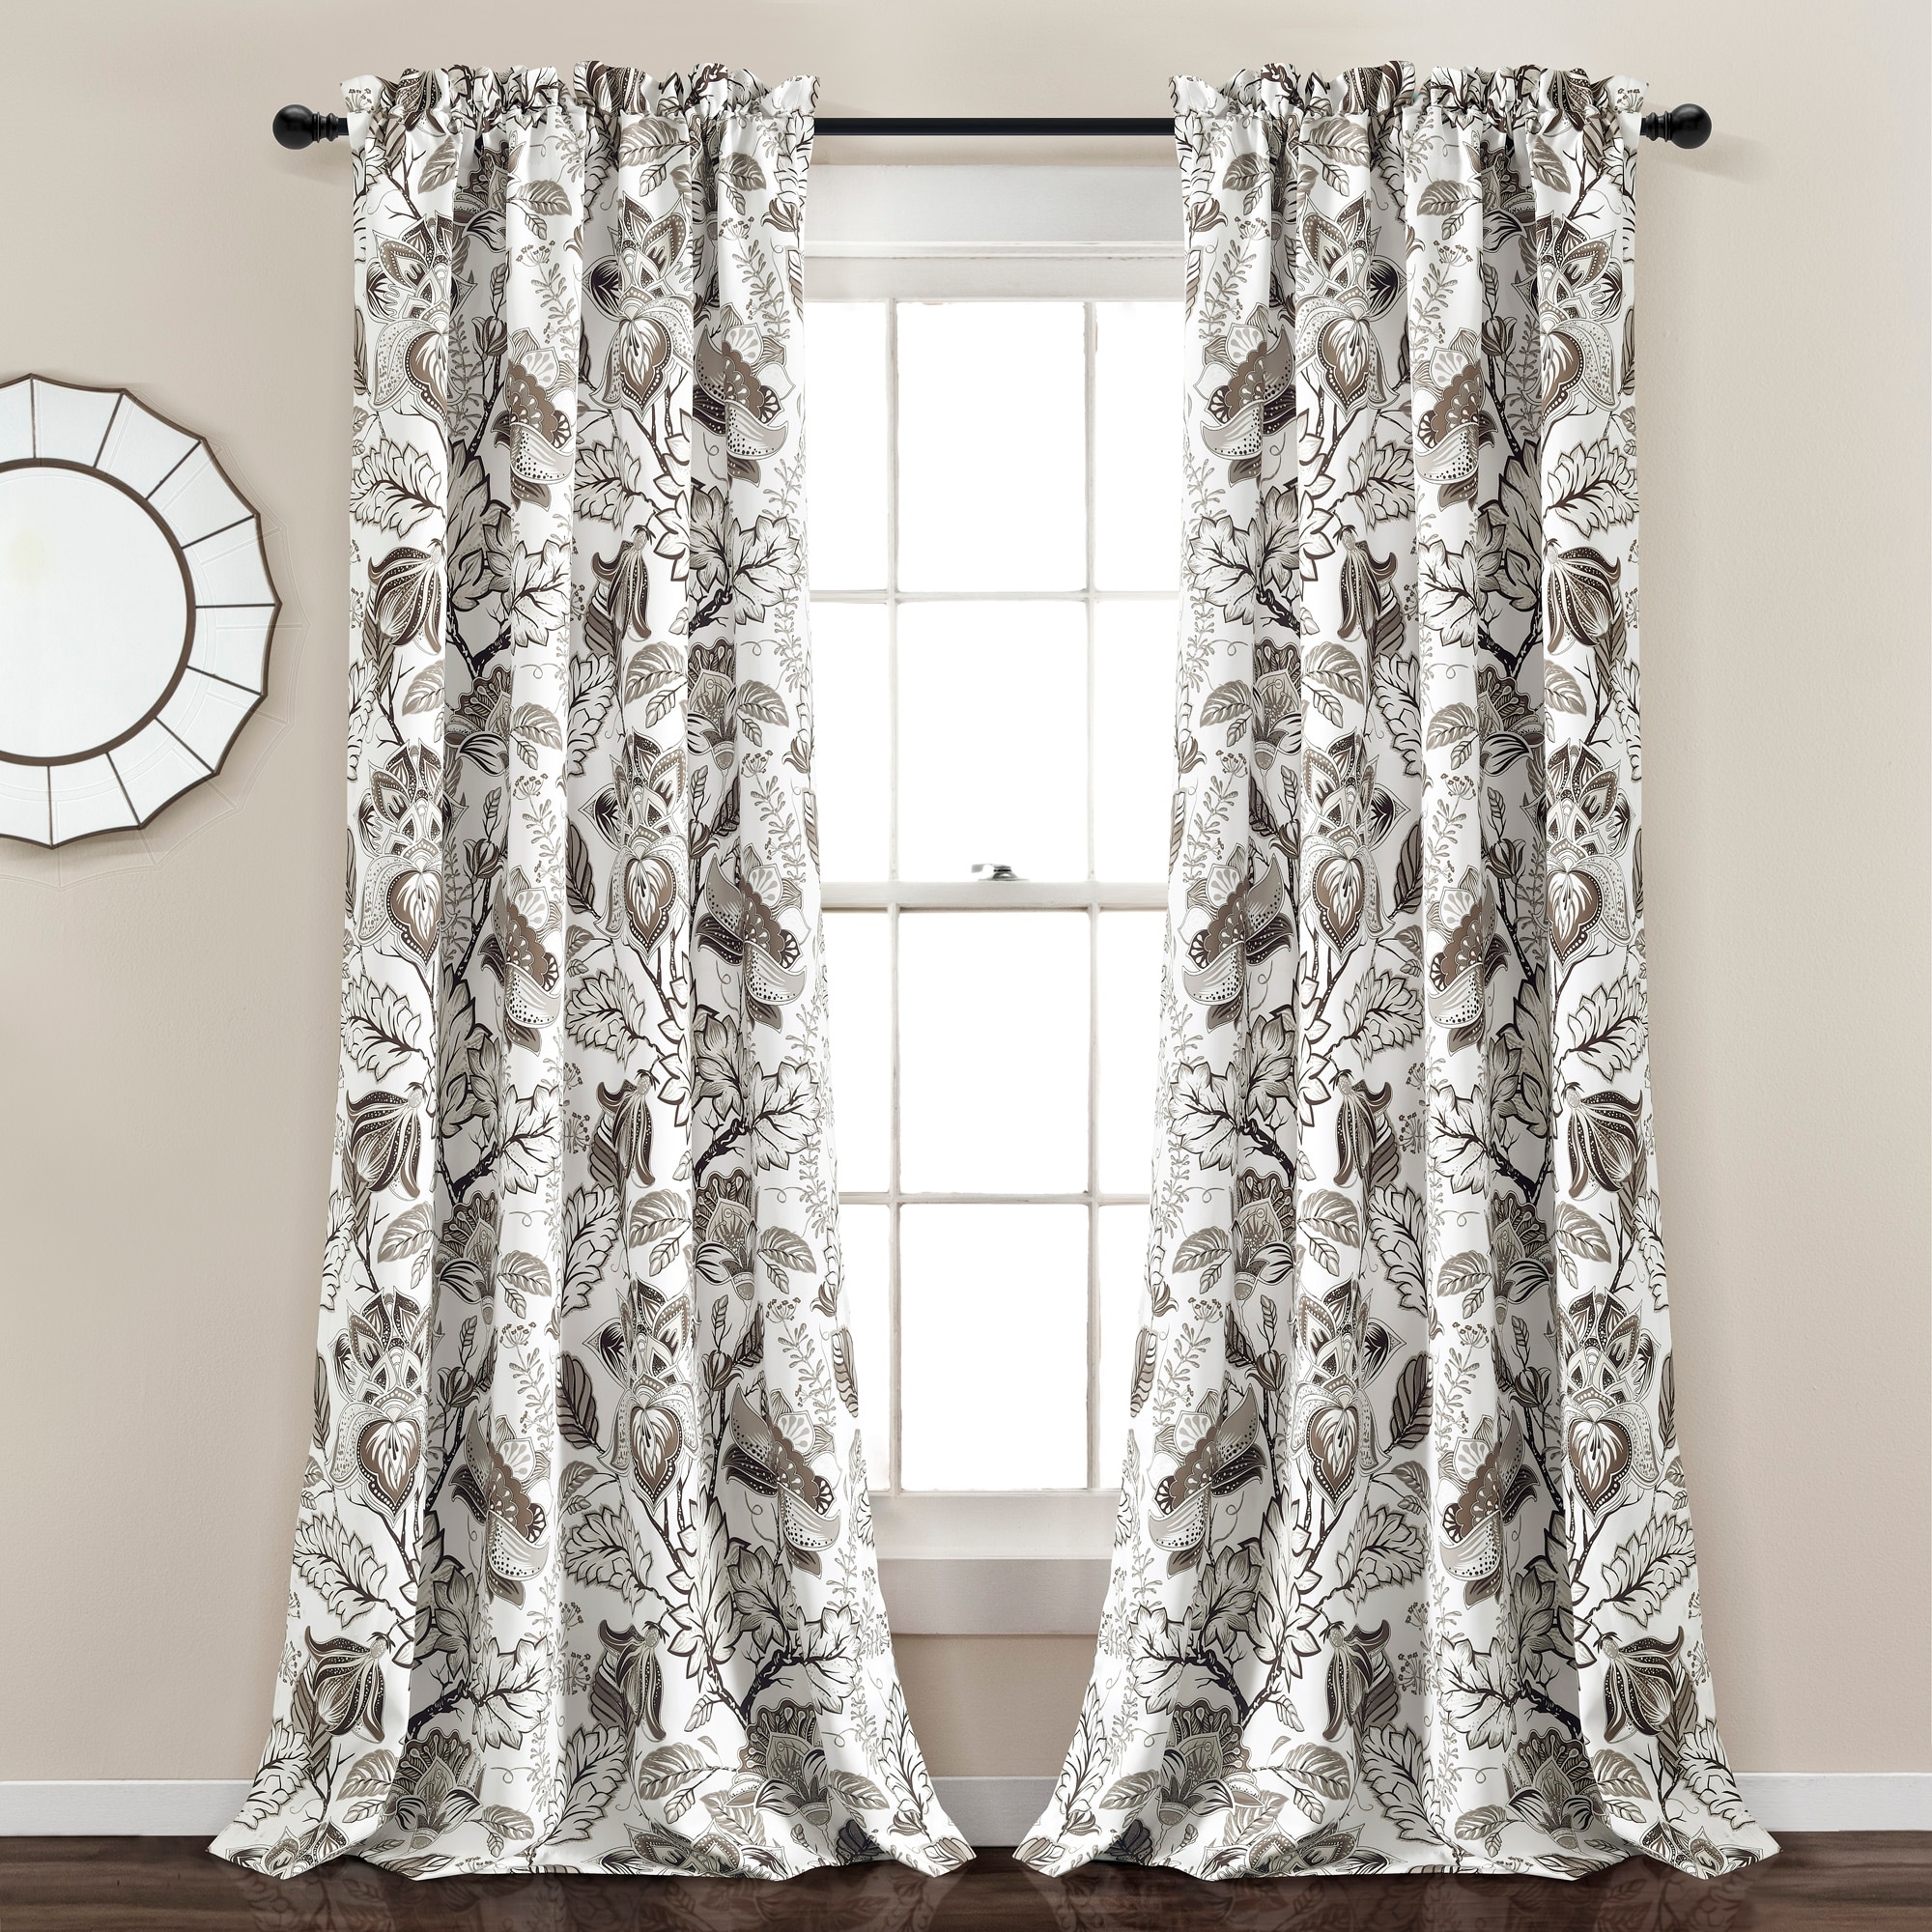 Curtain Panel - Dolores - White - Linen/Cotton Blend (size options)